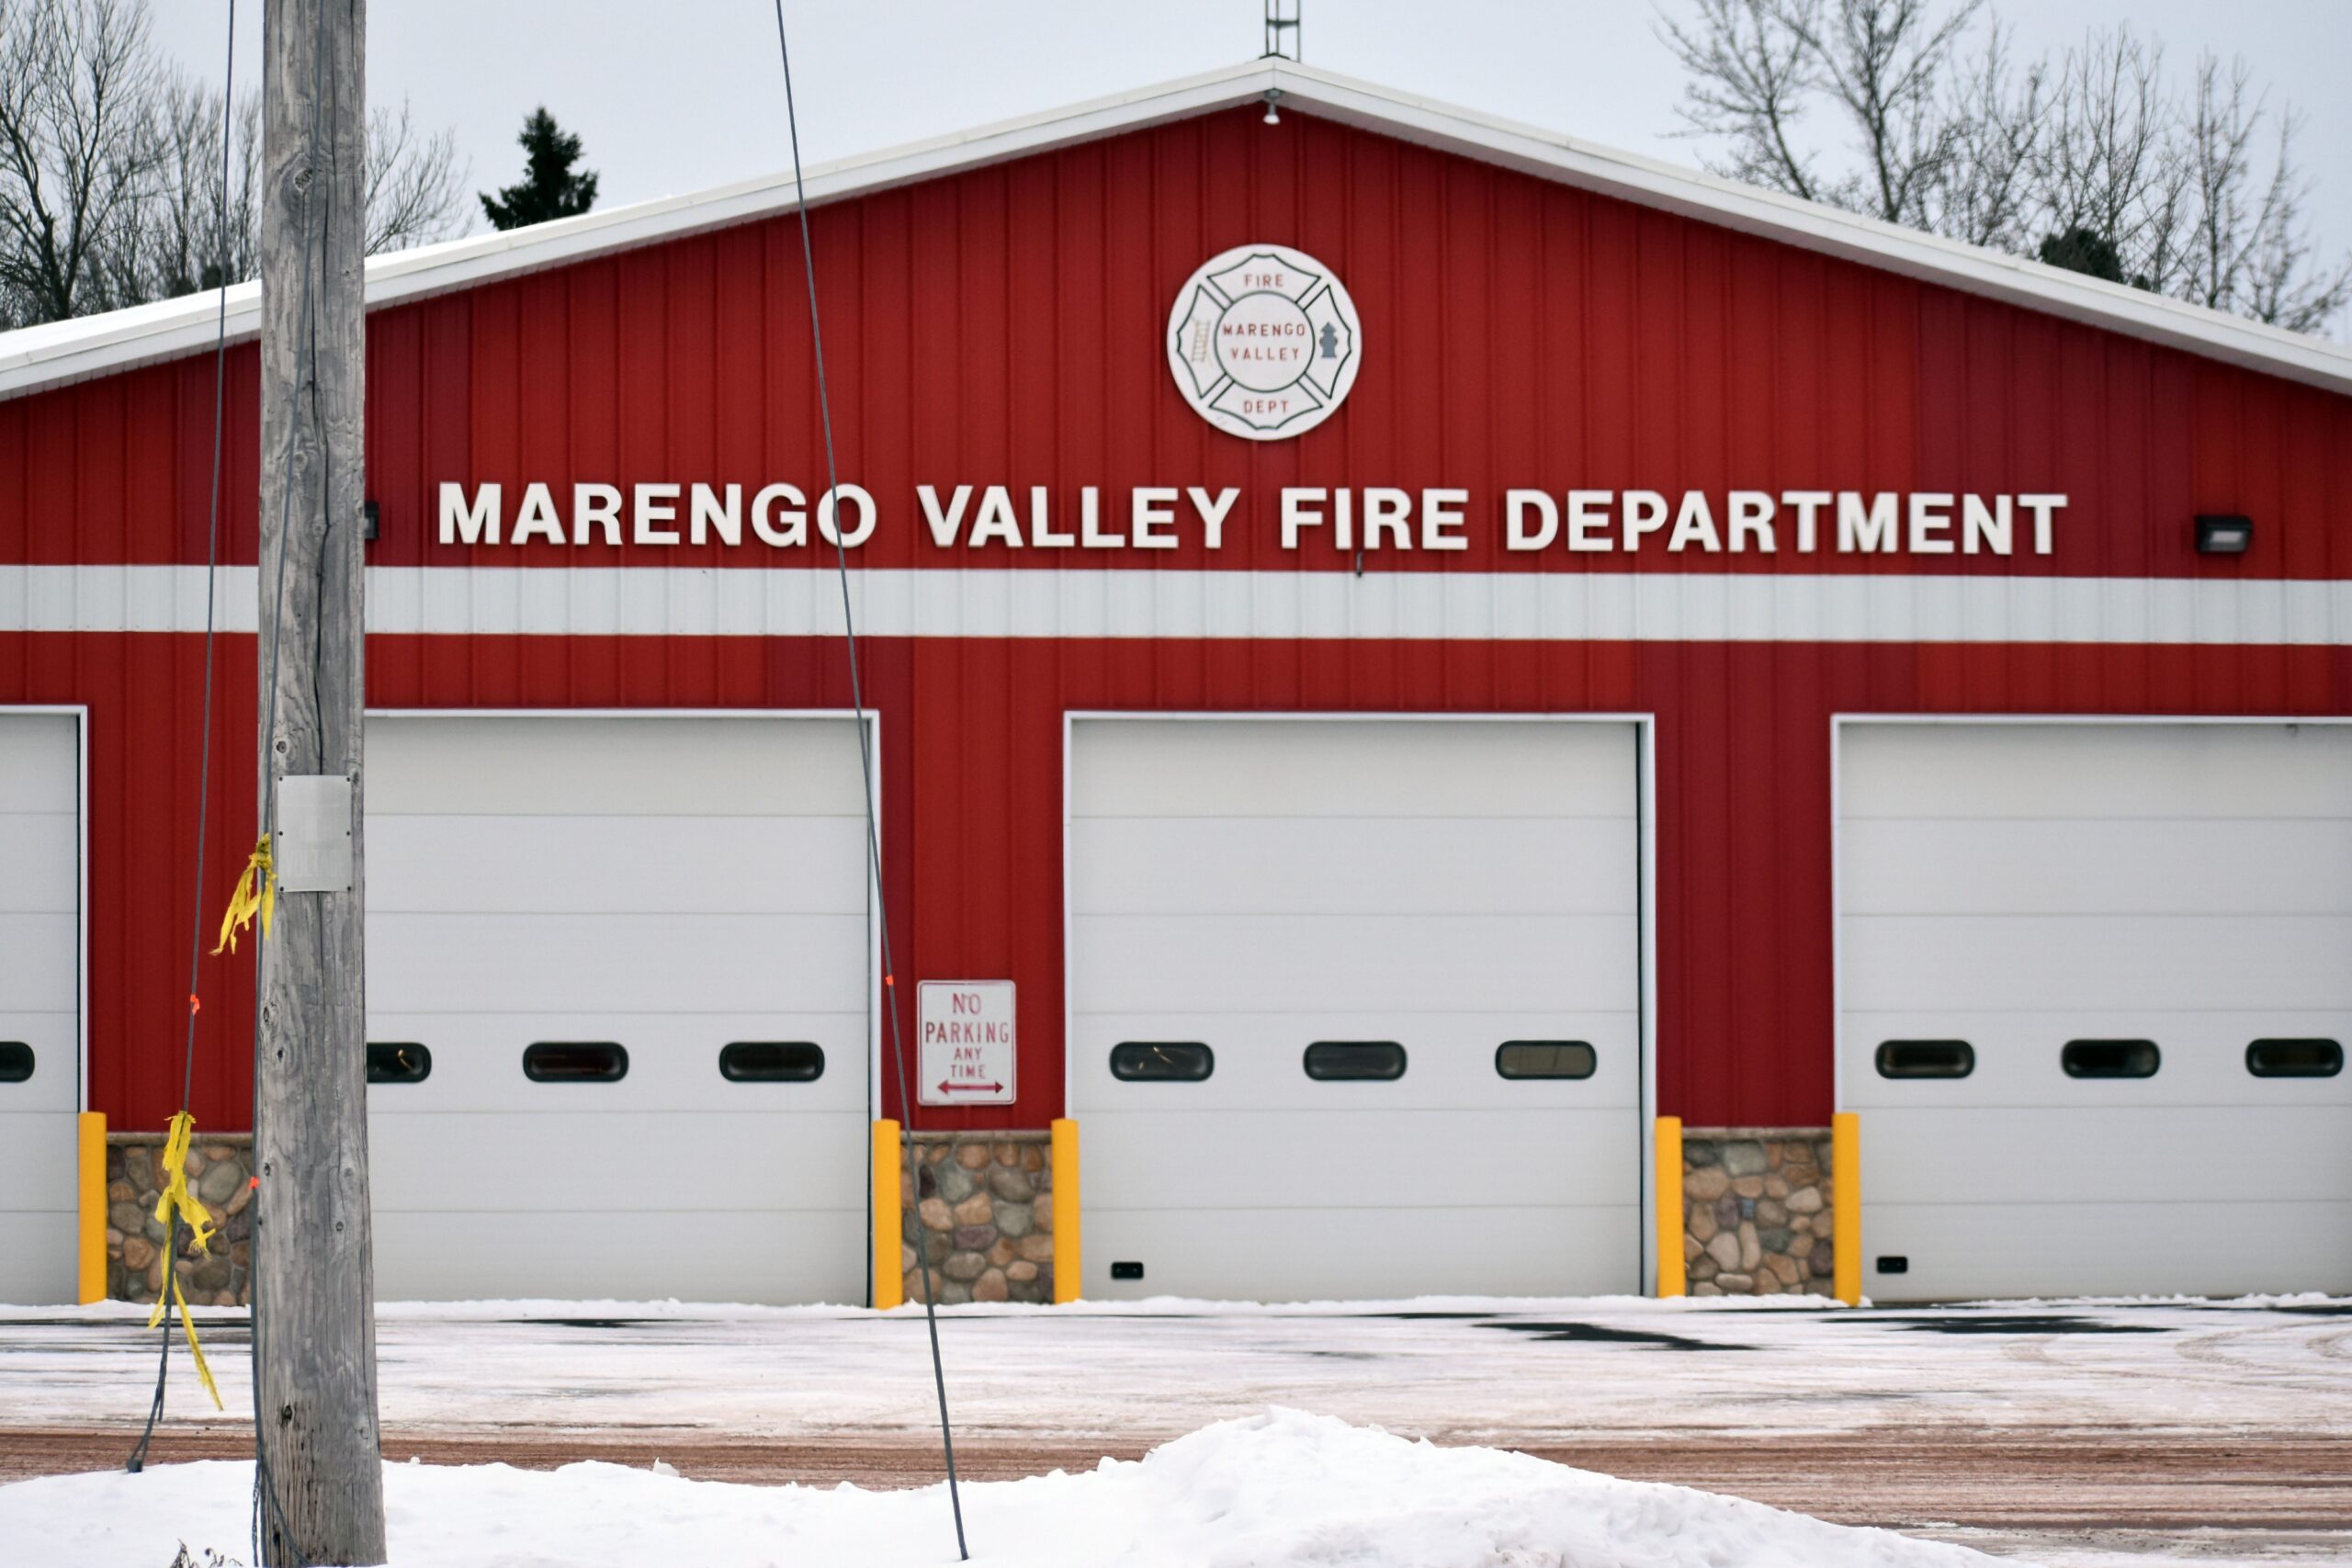 Marengo Valley Fire Department